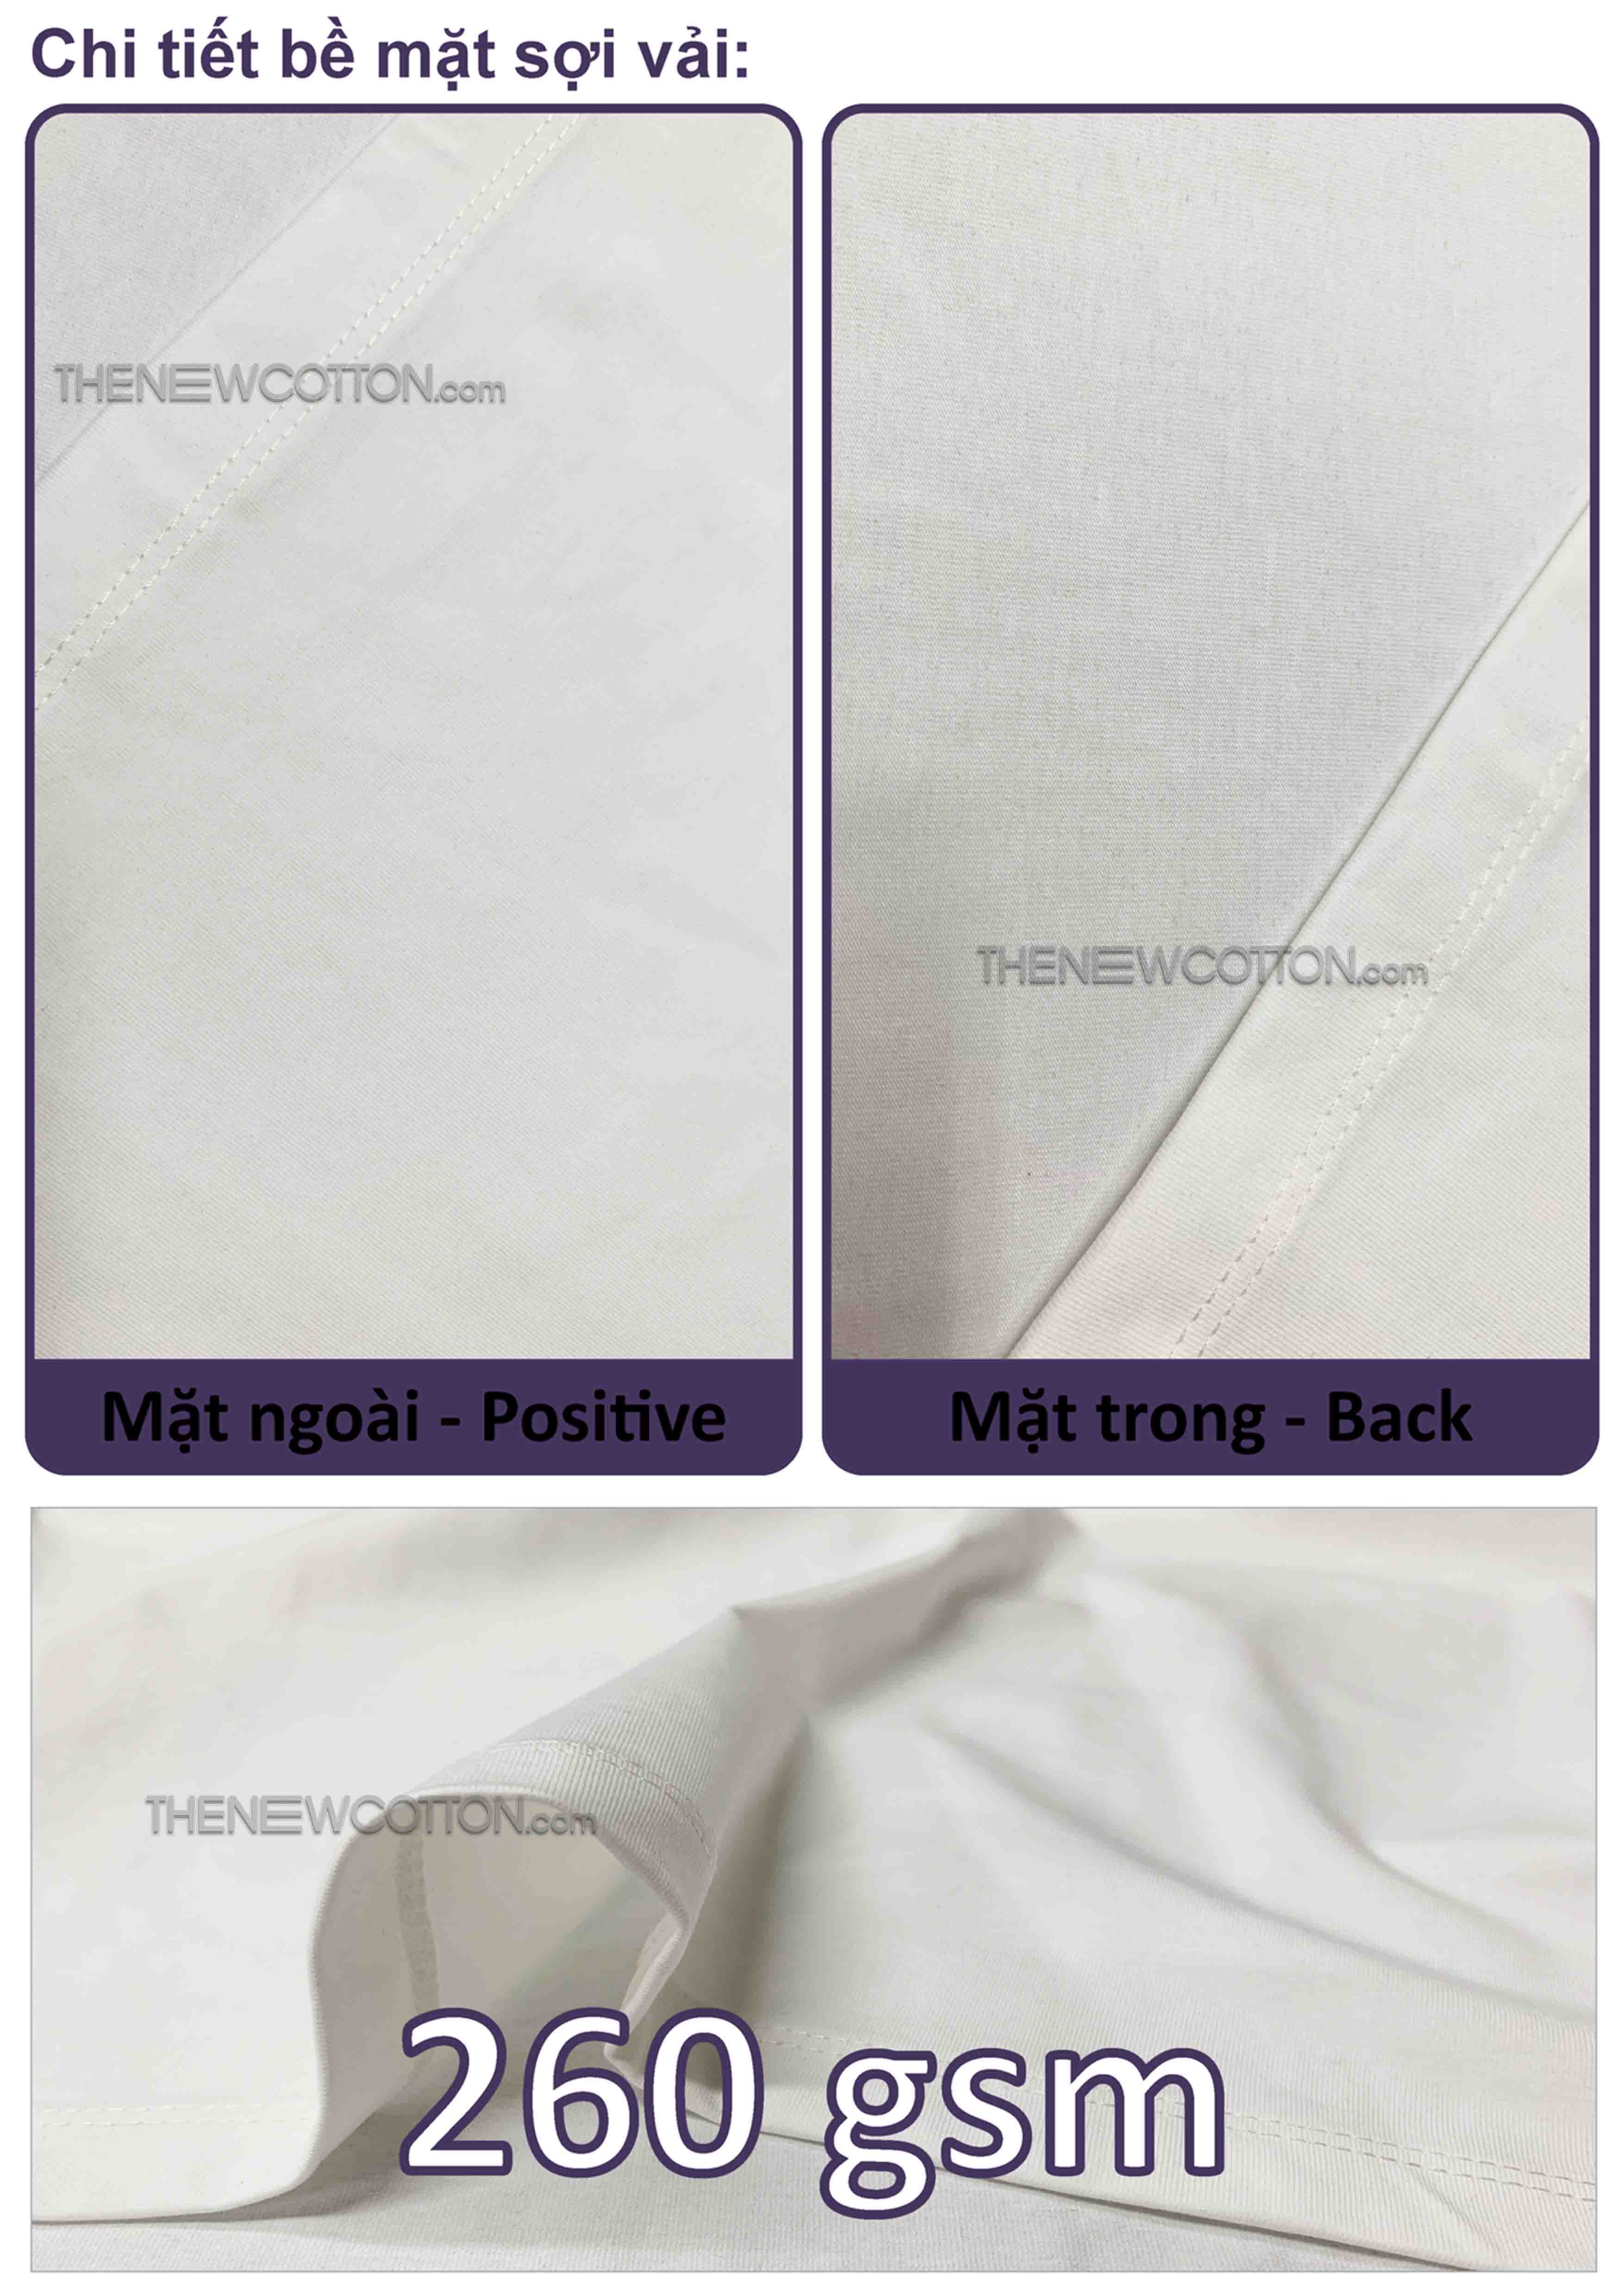 Chuyên Sỉ Áo Thun Phôi Trơn Local Brand x Vải Thun Cao Cấp Cool-Tech Cotton (Nhật Bản) | Xưởng May Áo Thun Theo Yêu Cầu - TheNewCotton.com